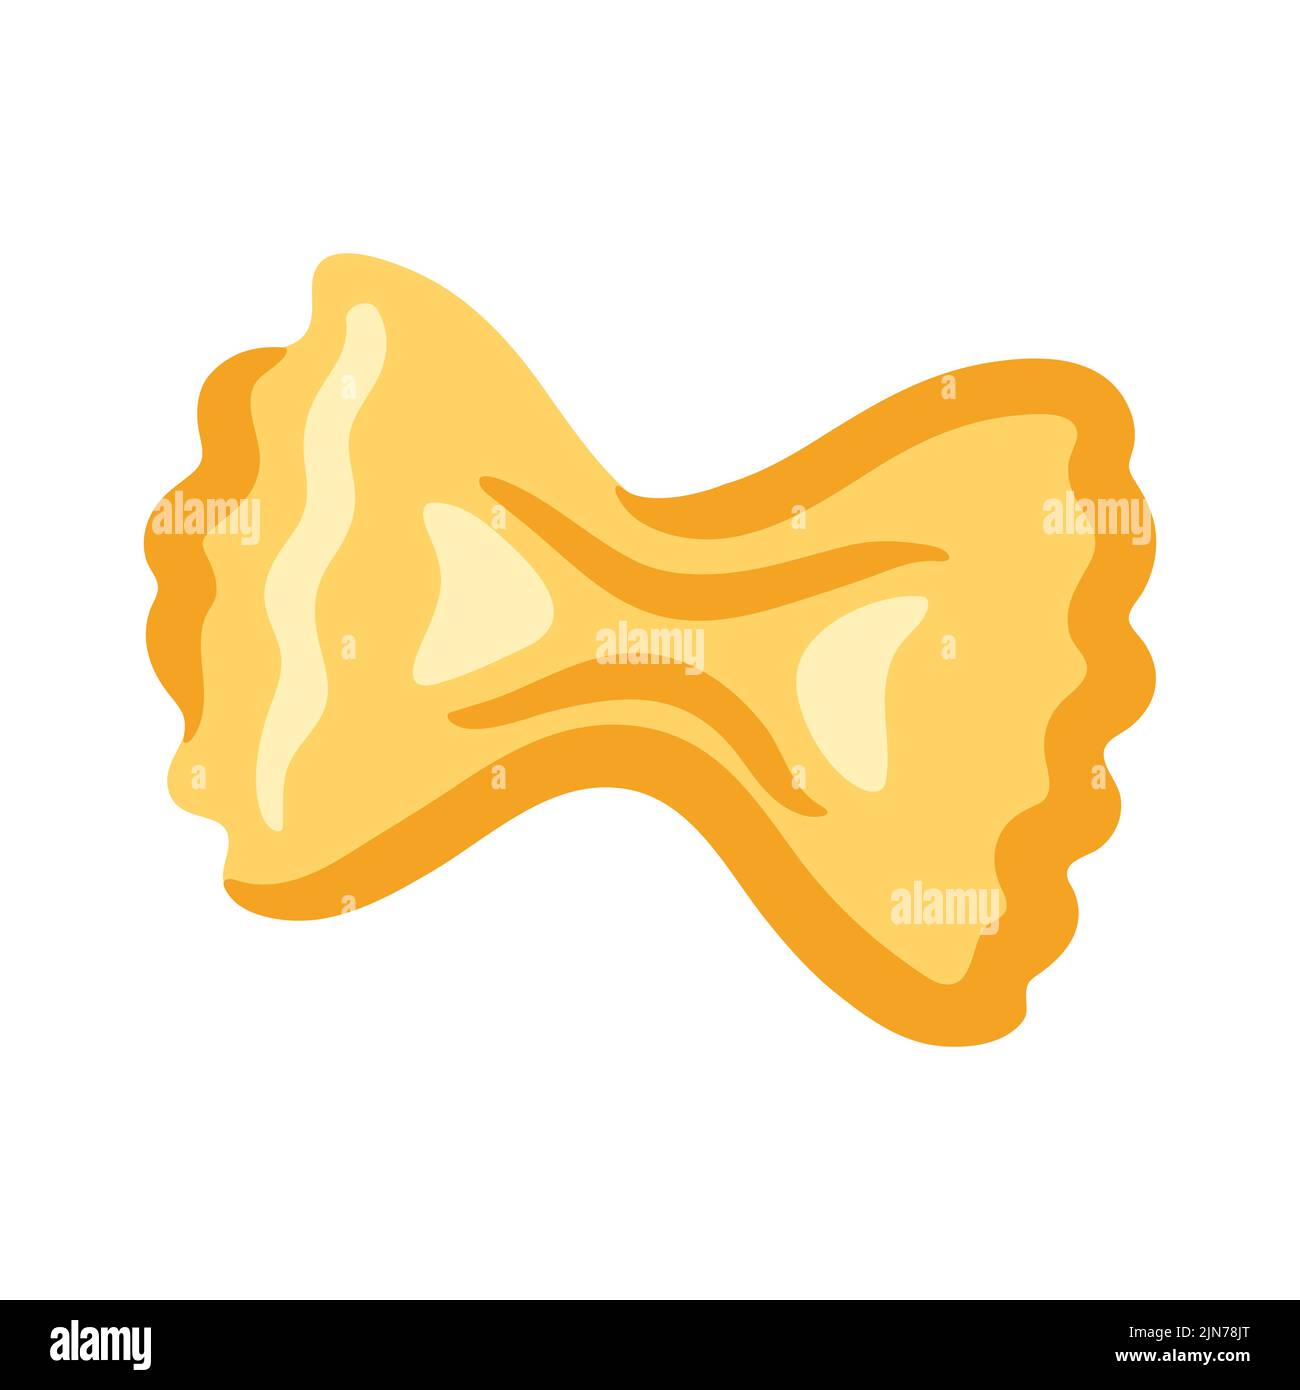 Illustrazione di farfalle di pasta italiana. Immagine culinaria per menu e ristoranti. Illustrazione Vettoriale